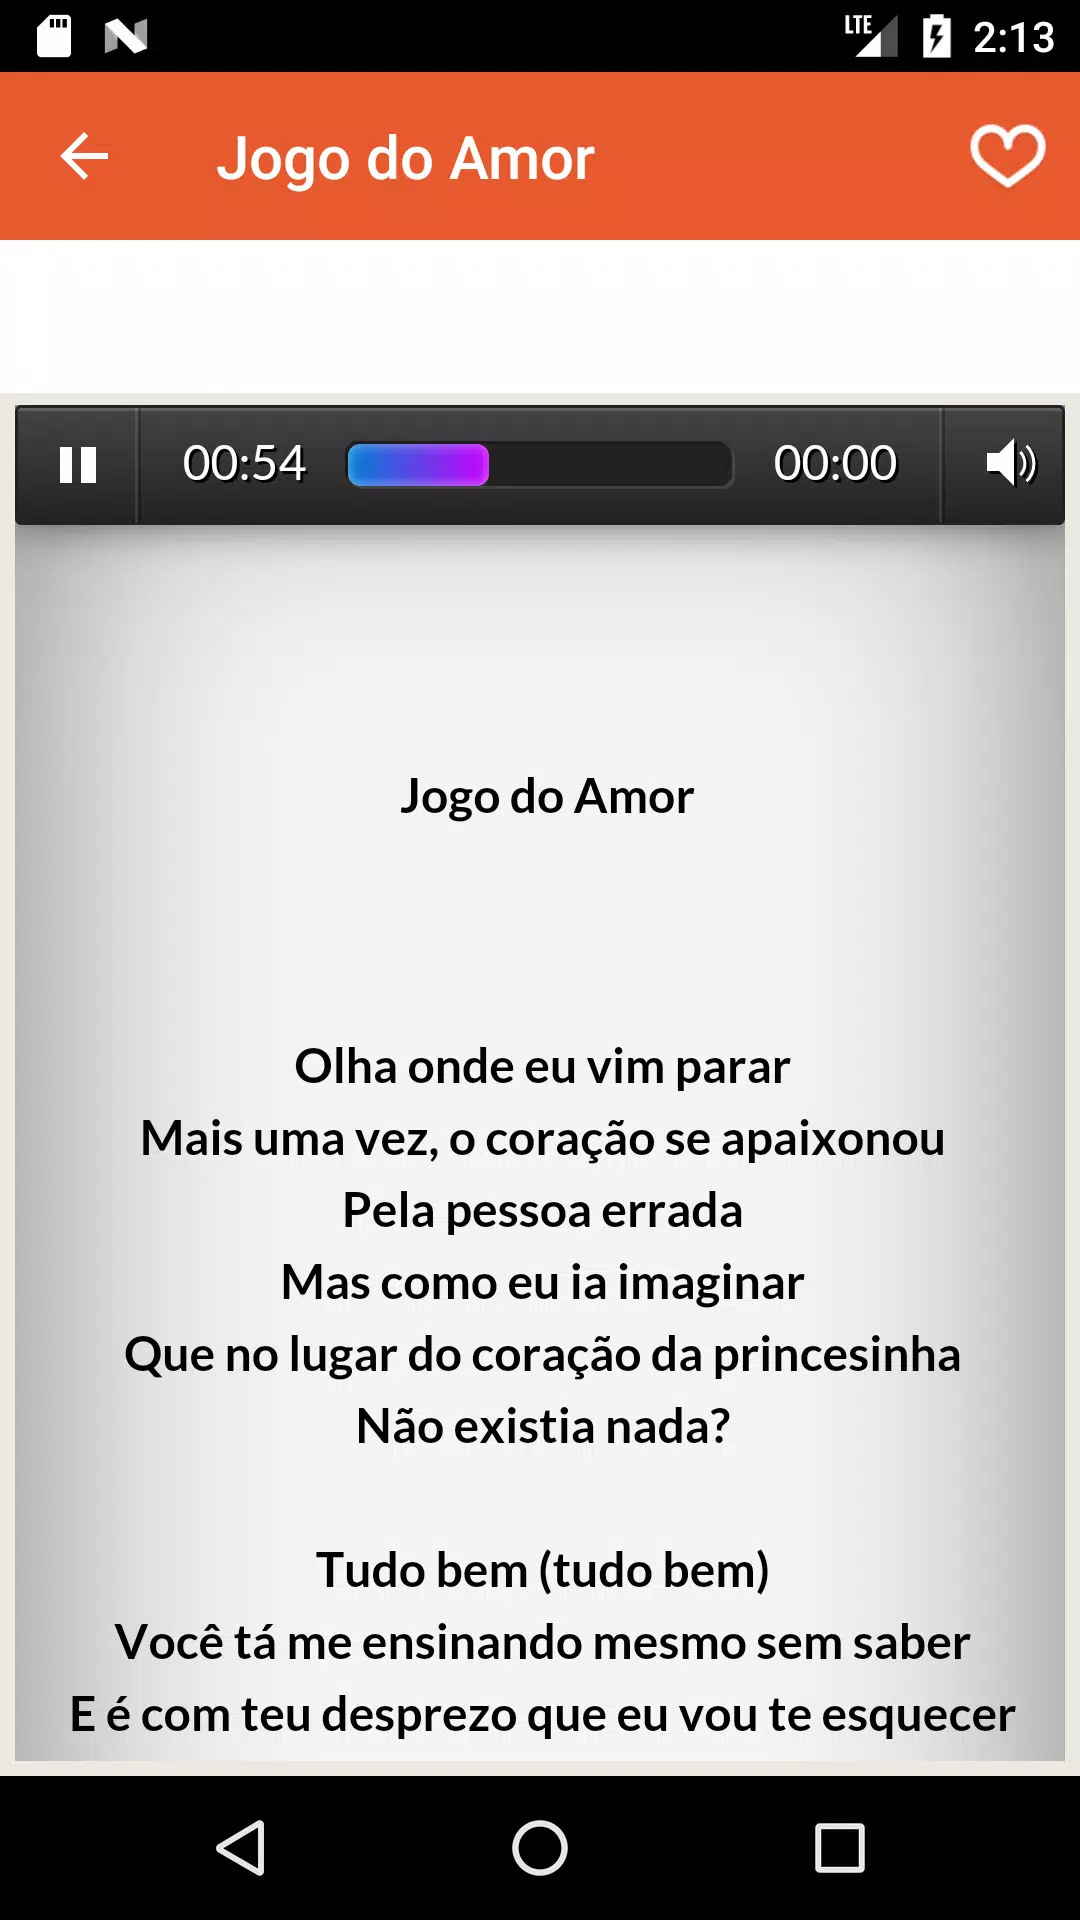 MC Bruninho - Jogo do amor - Letra Sub Español 